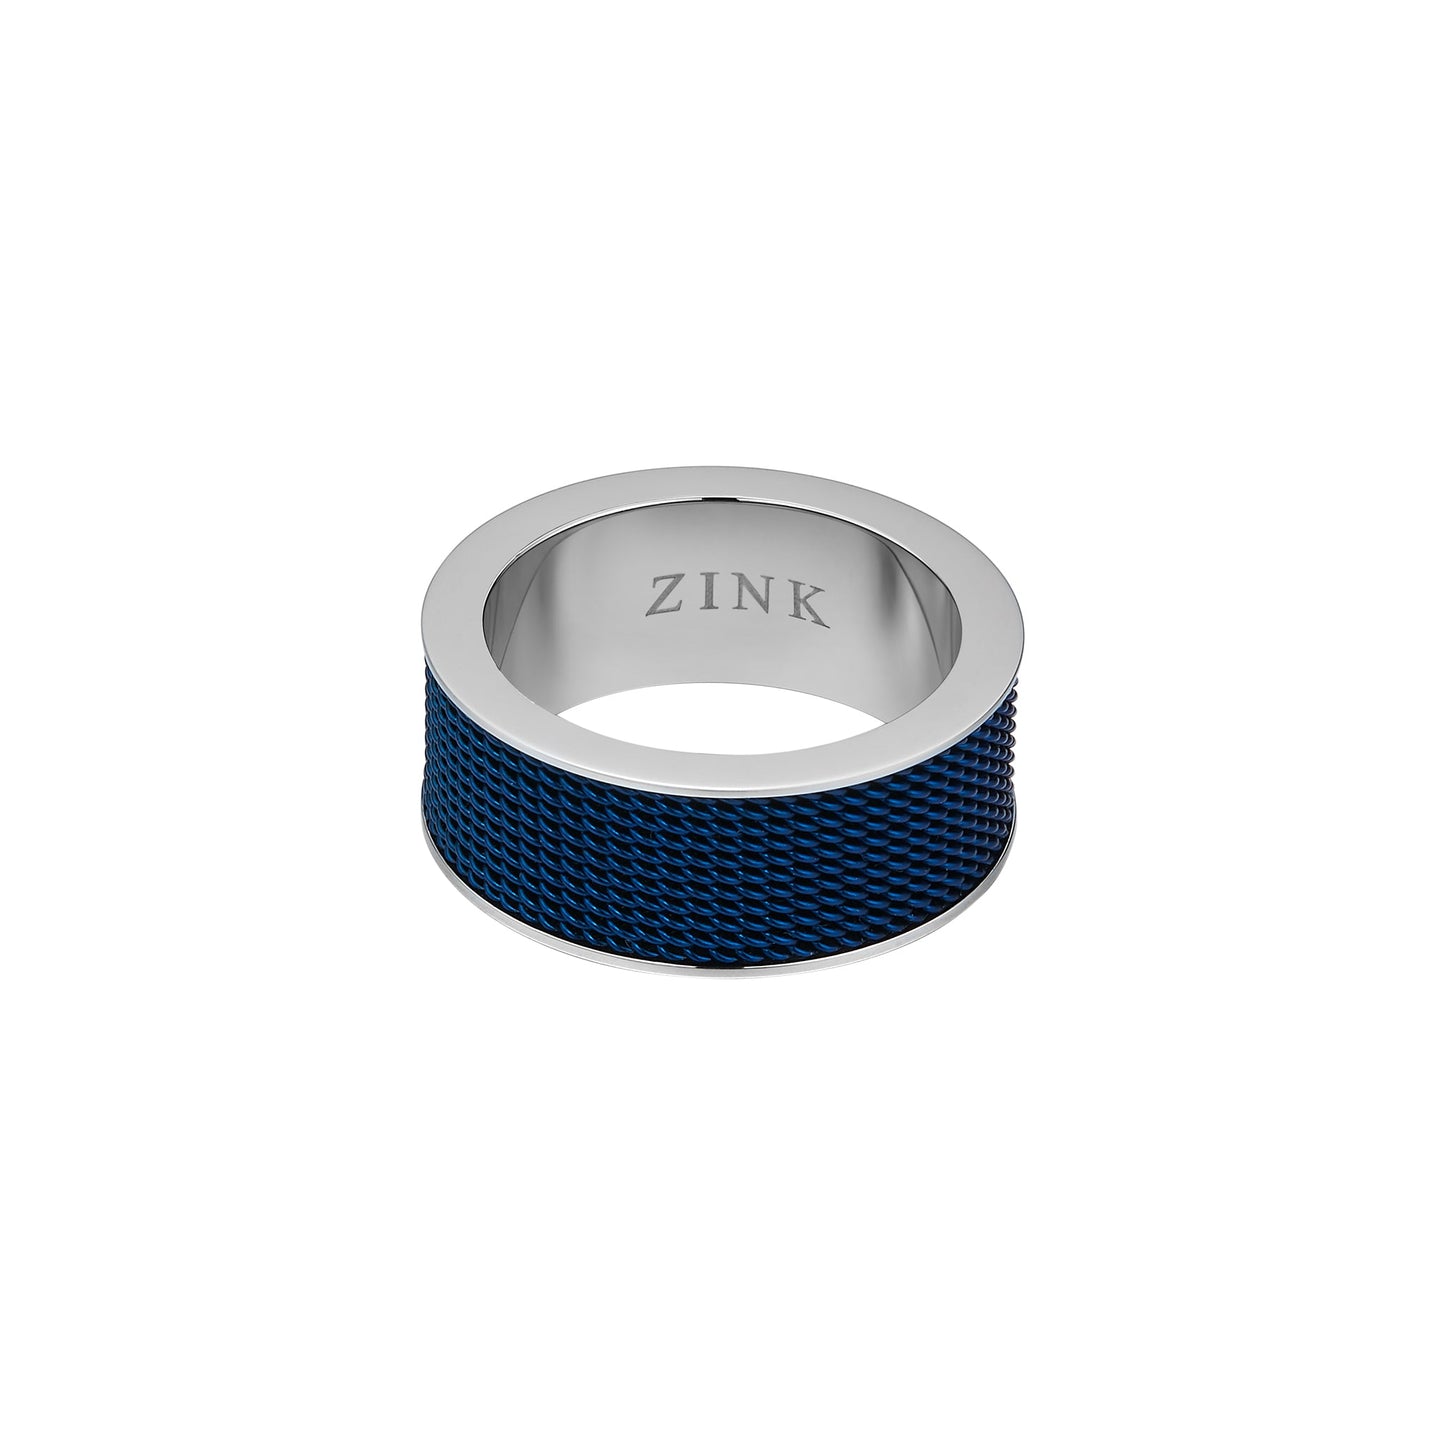 ZJRG019SBL ZINK Men's Rings